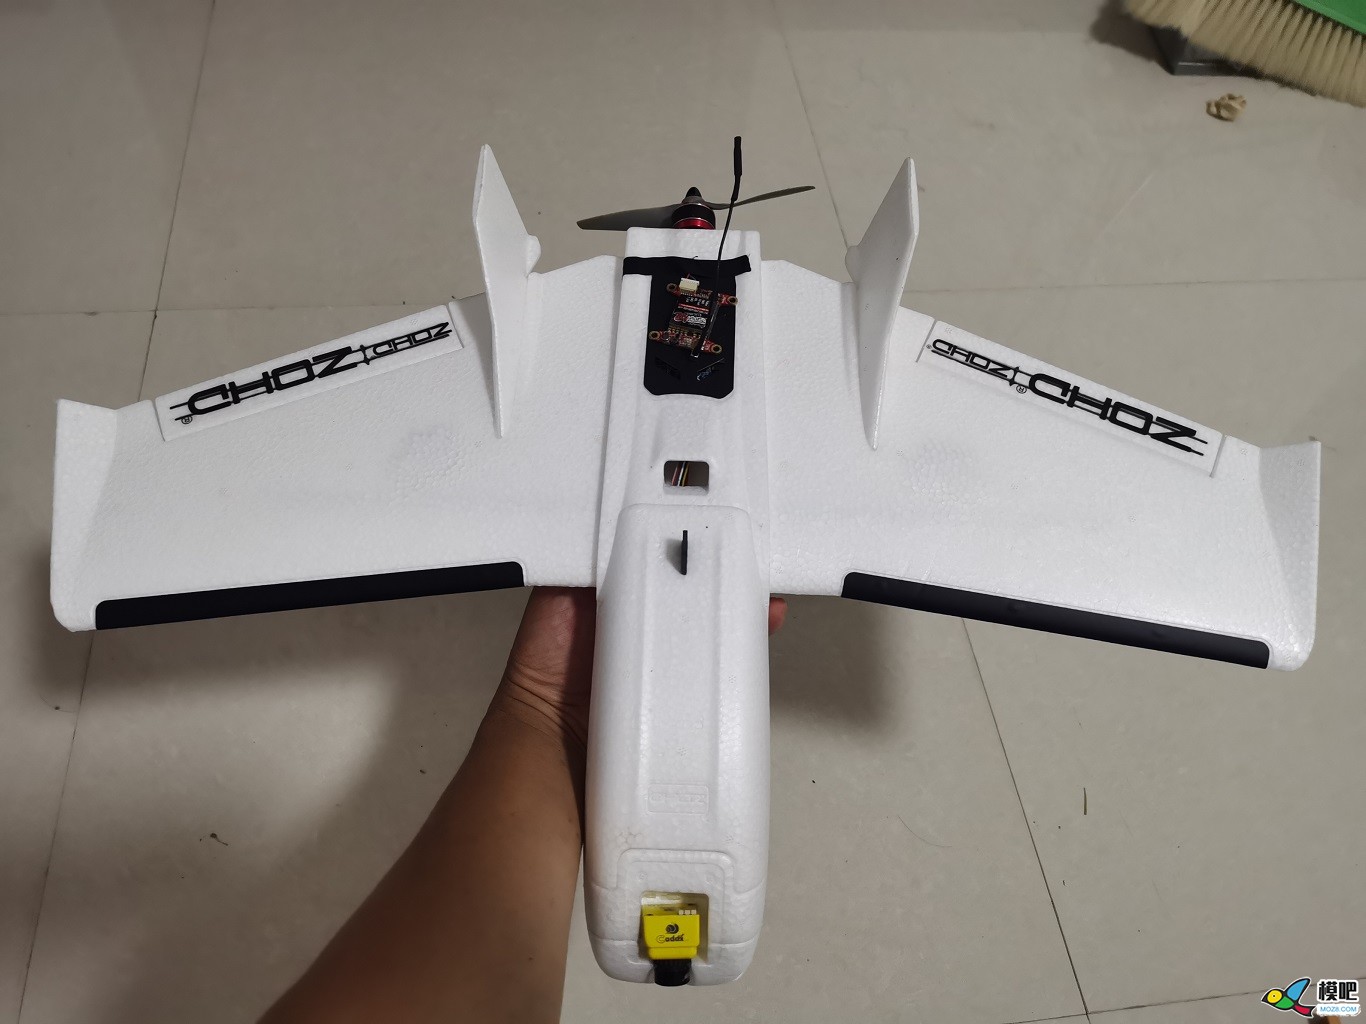 骨骼清奇，57cm翼展小飞机都要被玩坏了 电池,天线,舵机,图传,飞控 作者:zhangyiyun2014 2742 